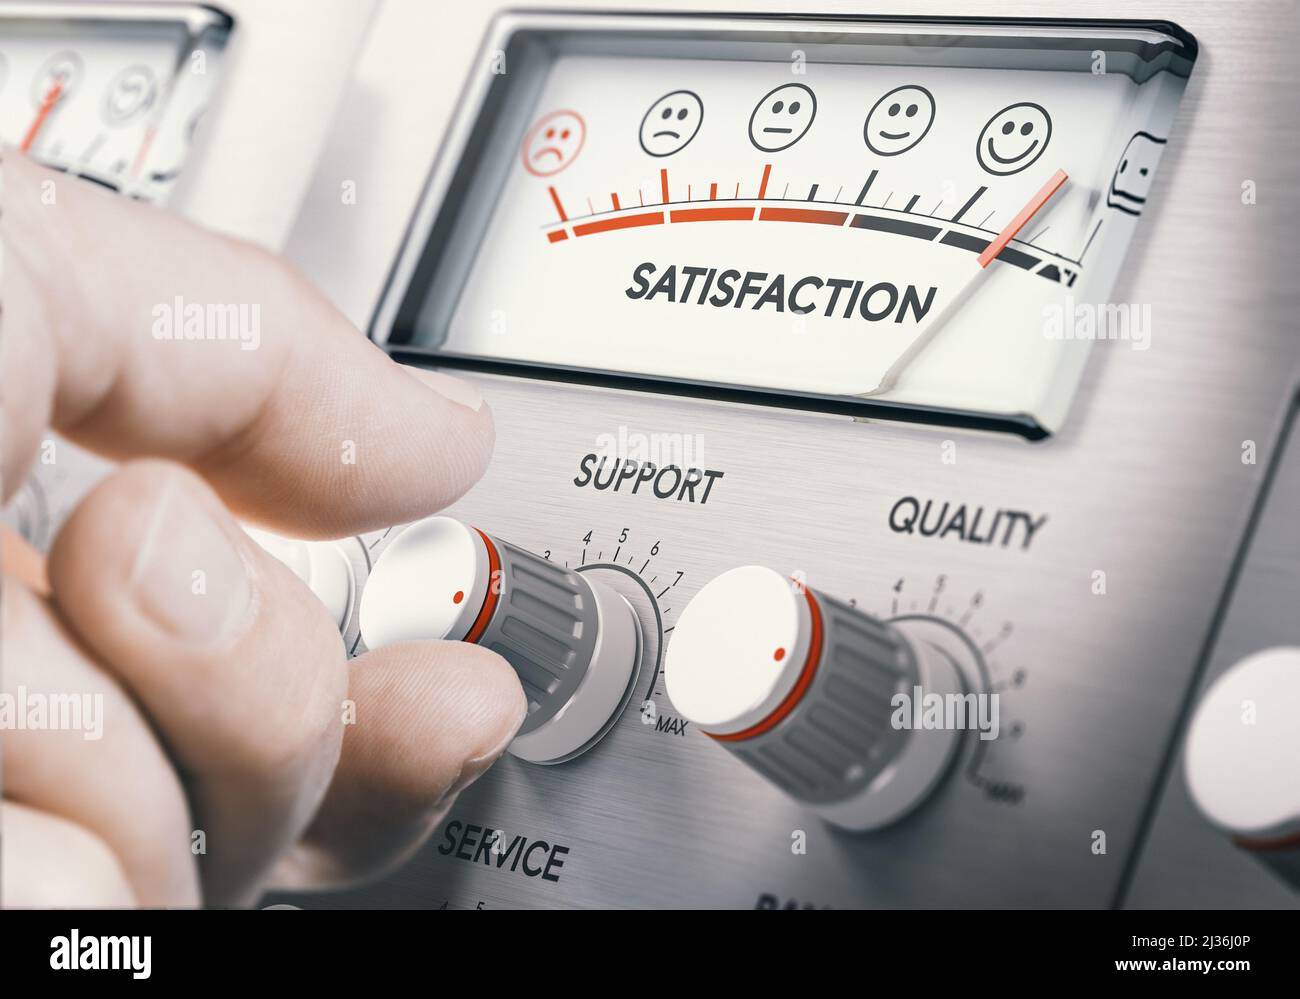 Tournez manuellement un bouton rotatif pour augmenter la satisfaction du service client. Image composite entre une photographie de main et un arrière-plan de 3D. Banque D'Images